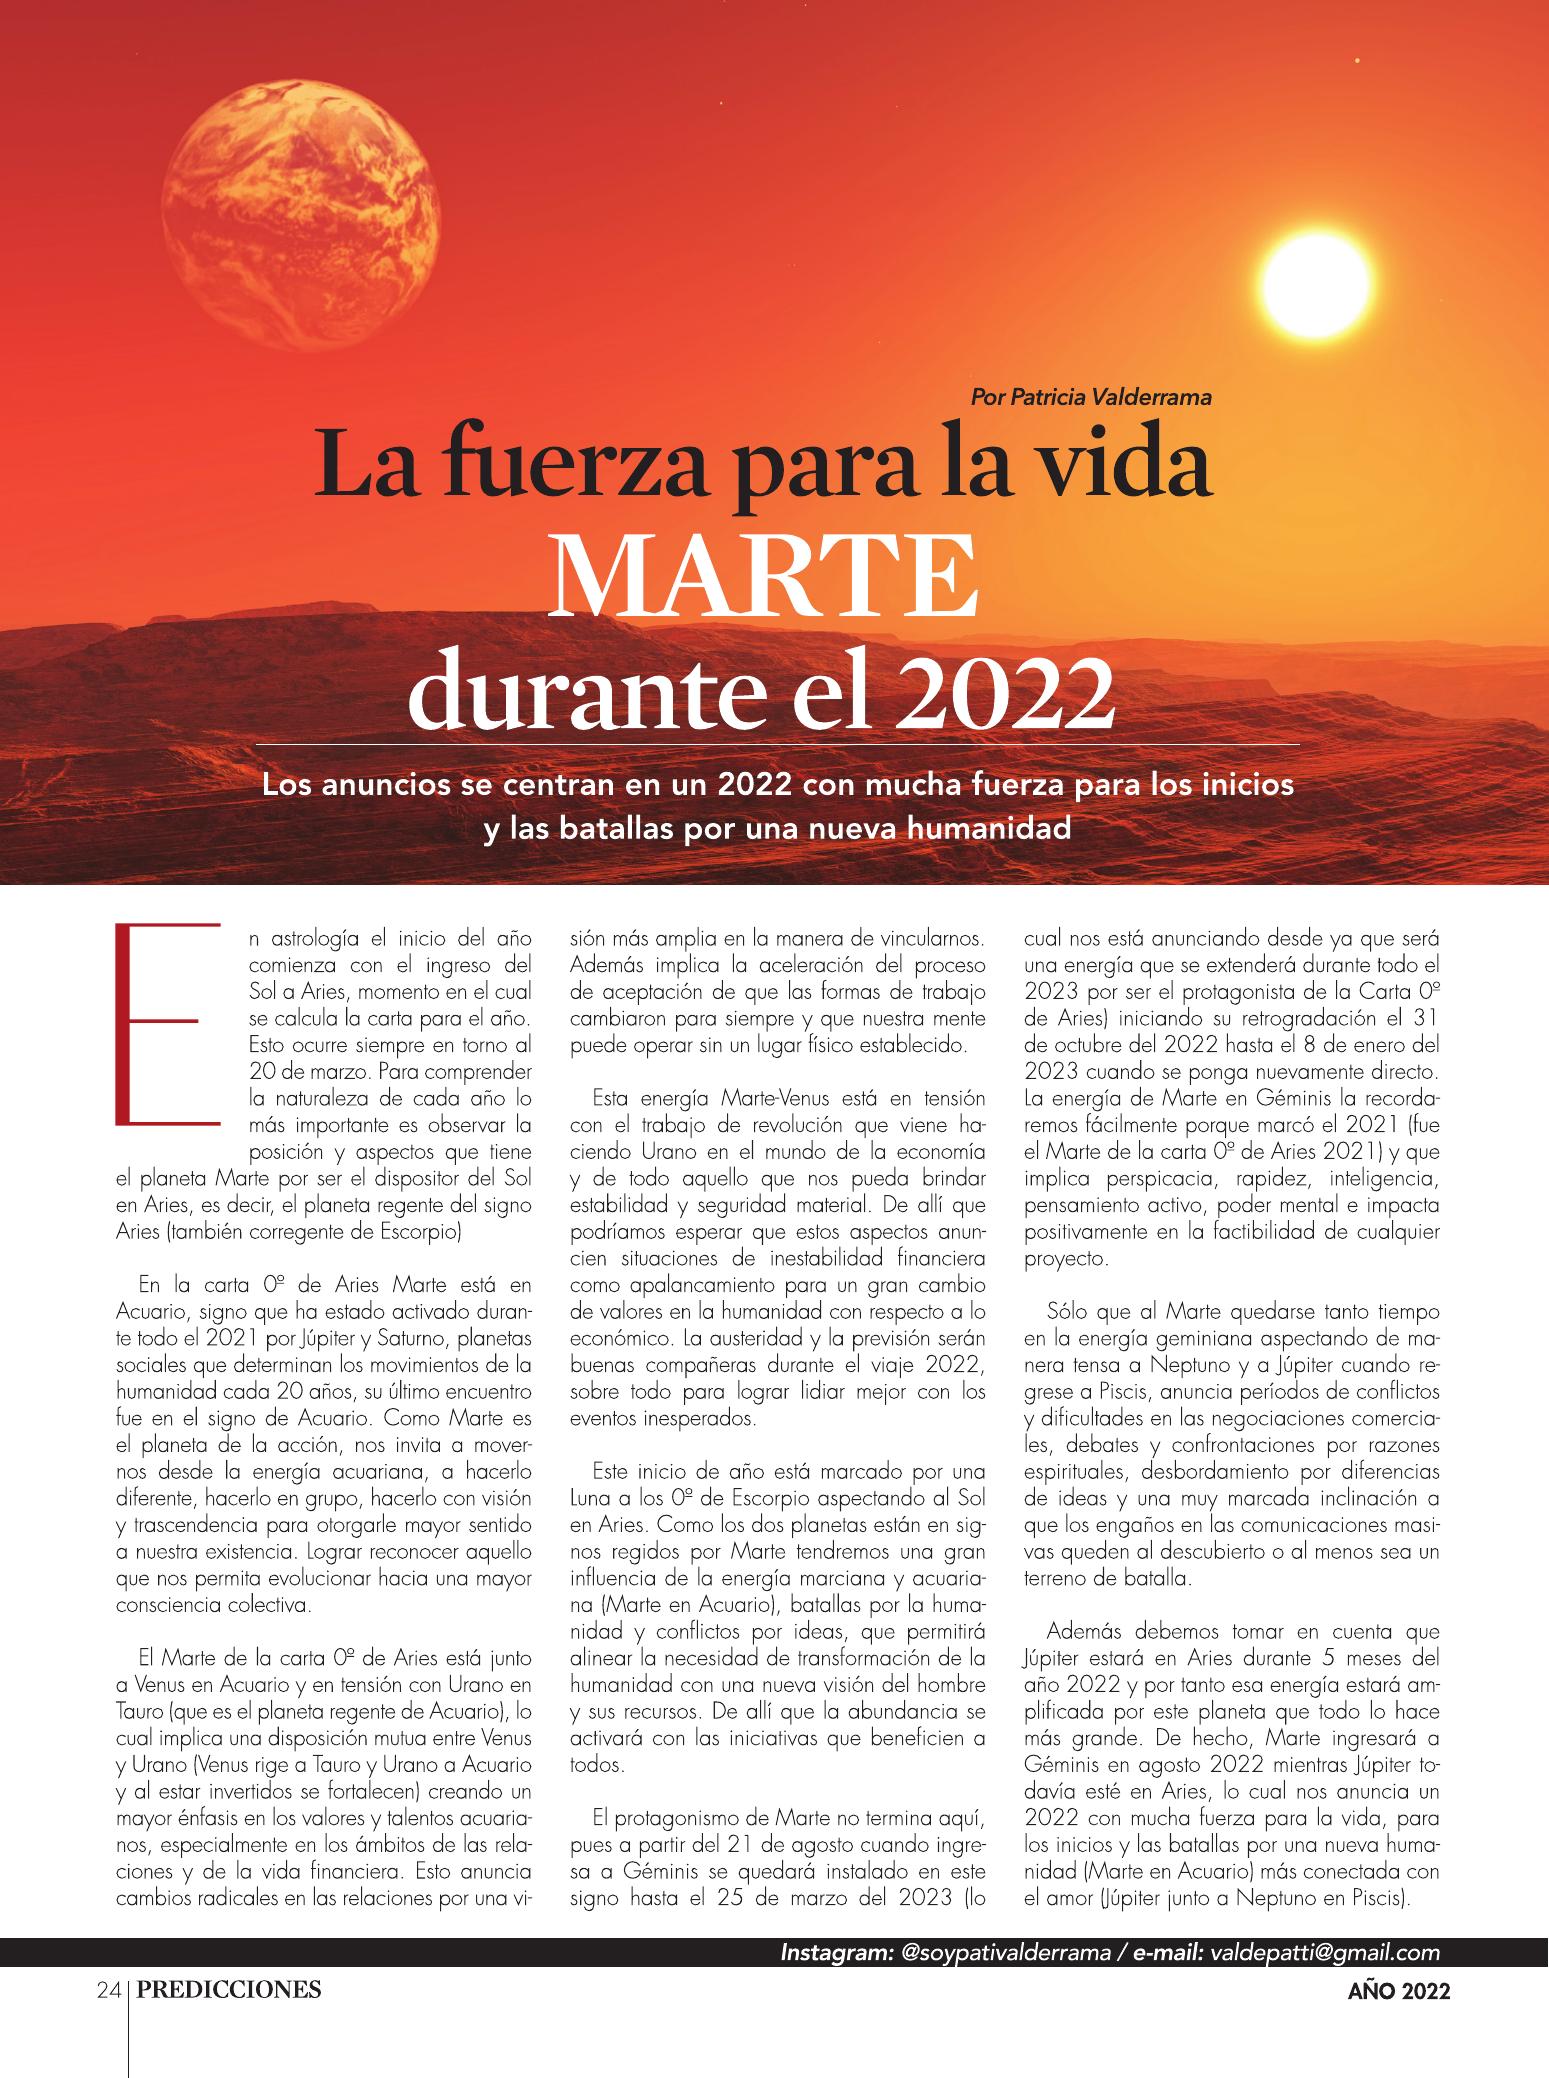 24-REV La fuerza para la vida Marte durante el 2022